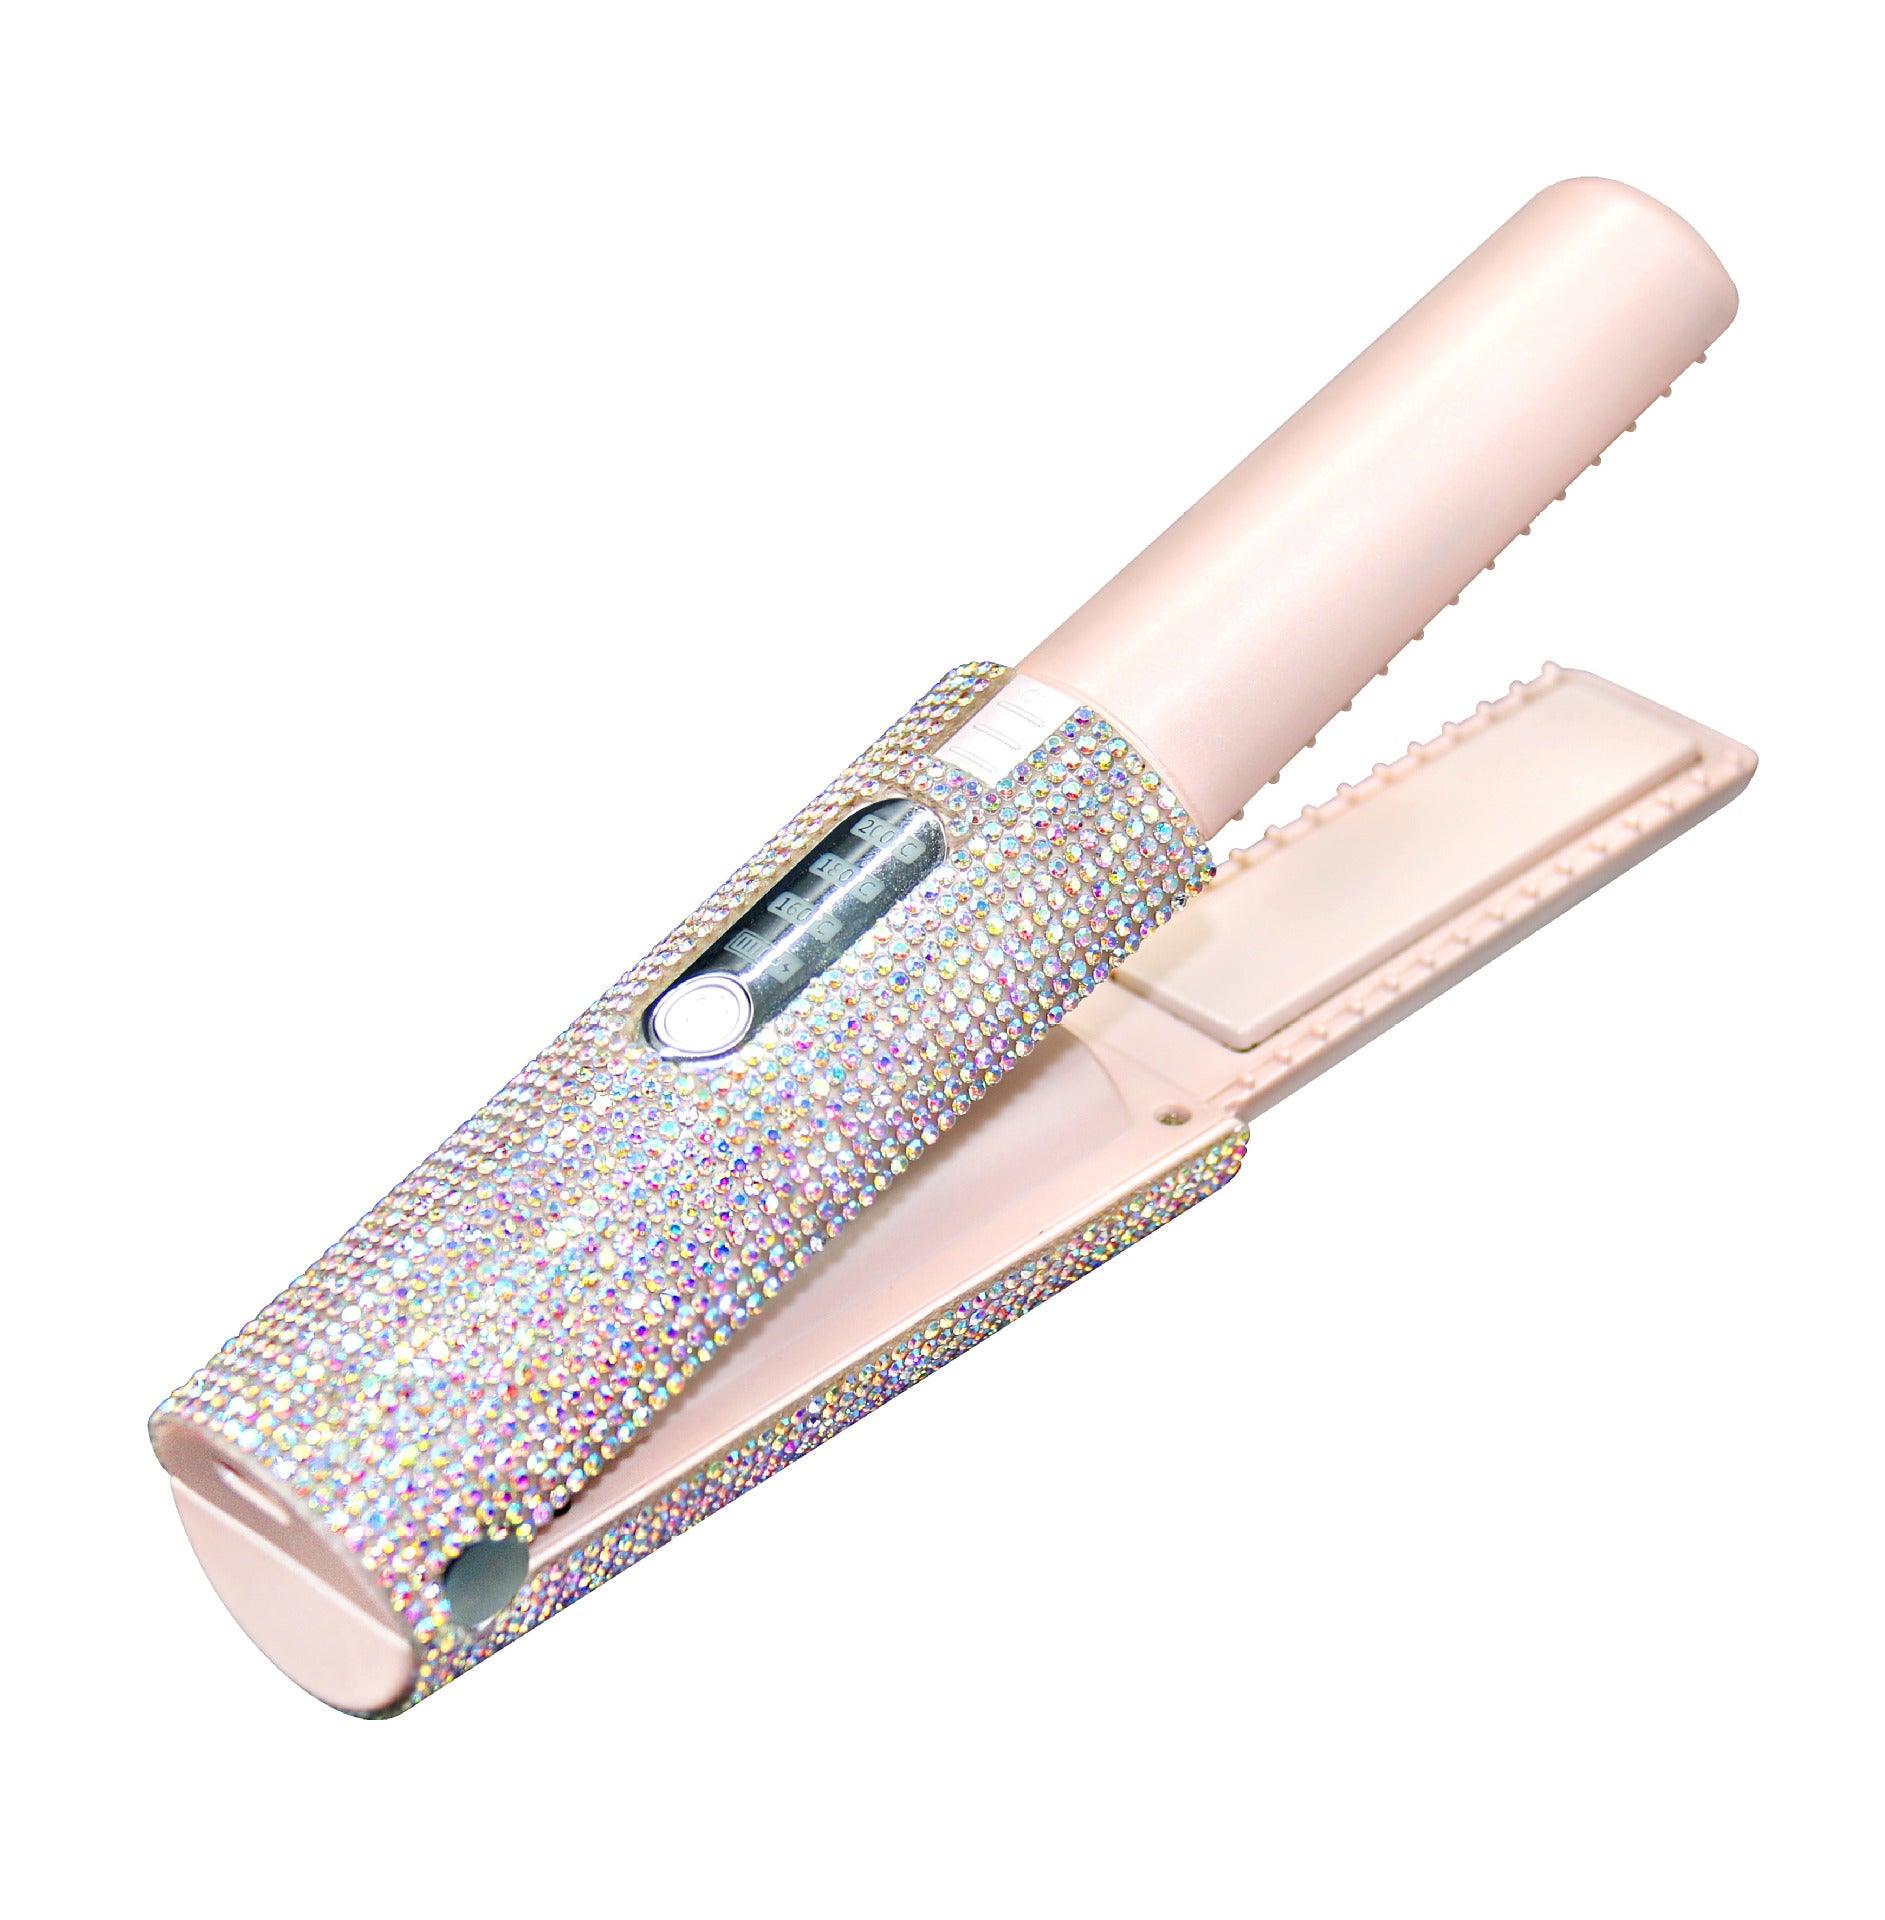 Professional Hair Straightener Charging Portable USB Wireless Hair Straightener For Women Hair Care - Nioor